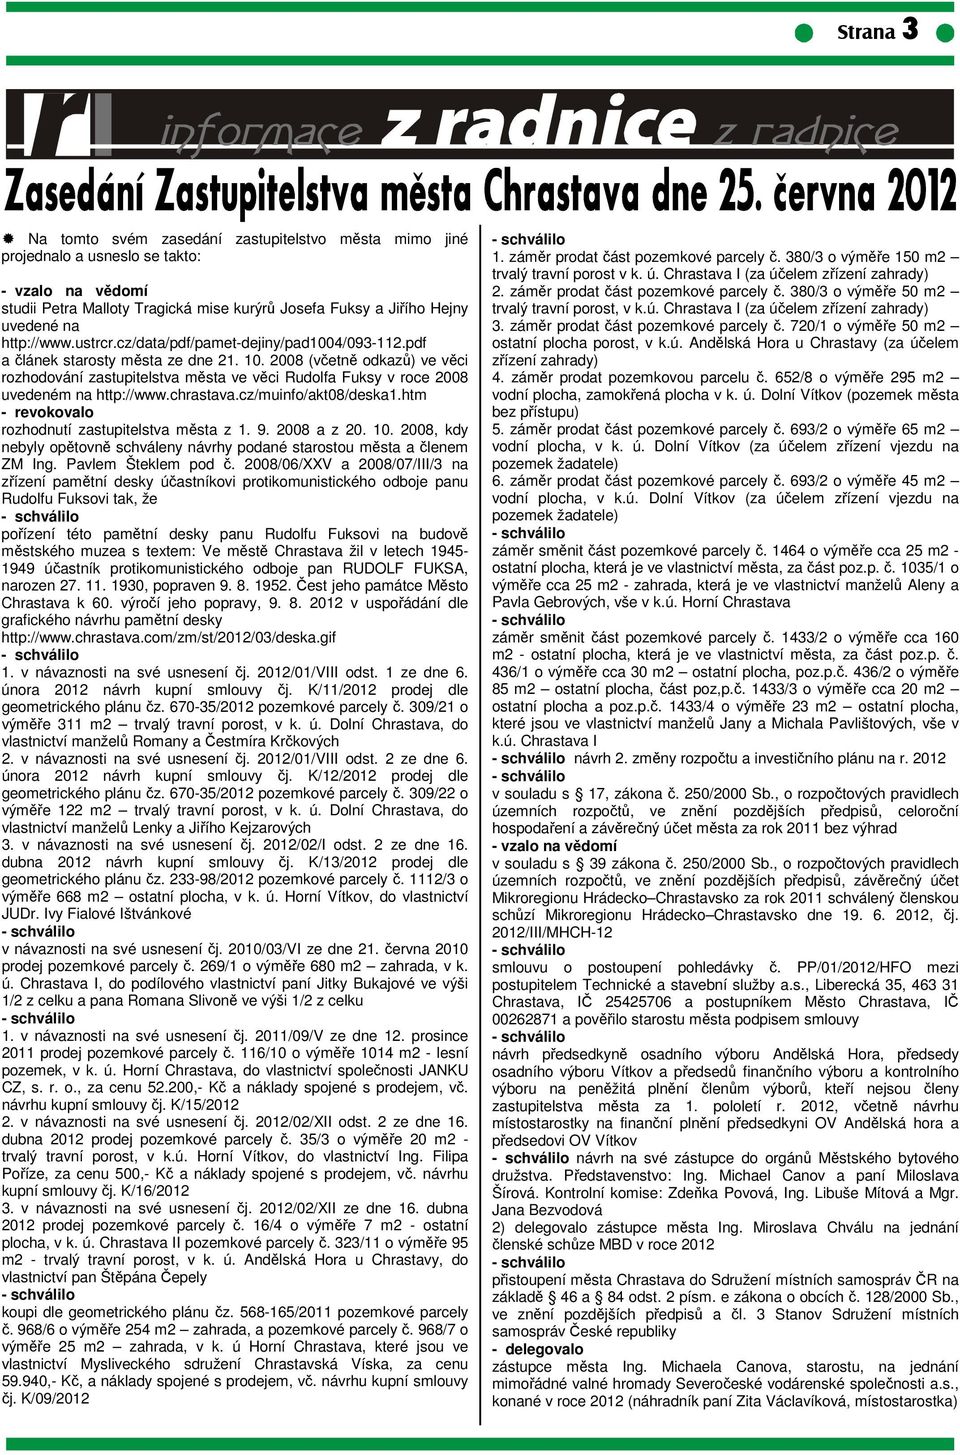 2008 (včetně odkazů) ve věci rozhodování zastupitelstva města ve věci Rudolfa Fuksy v roce 2008 uvedeném na http://www.chrastava.cz/muinfo/akt08/deska1.